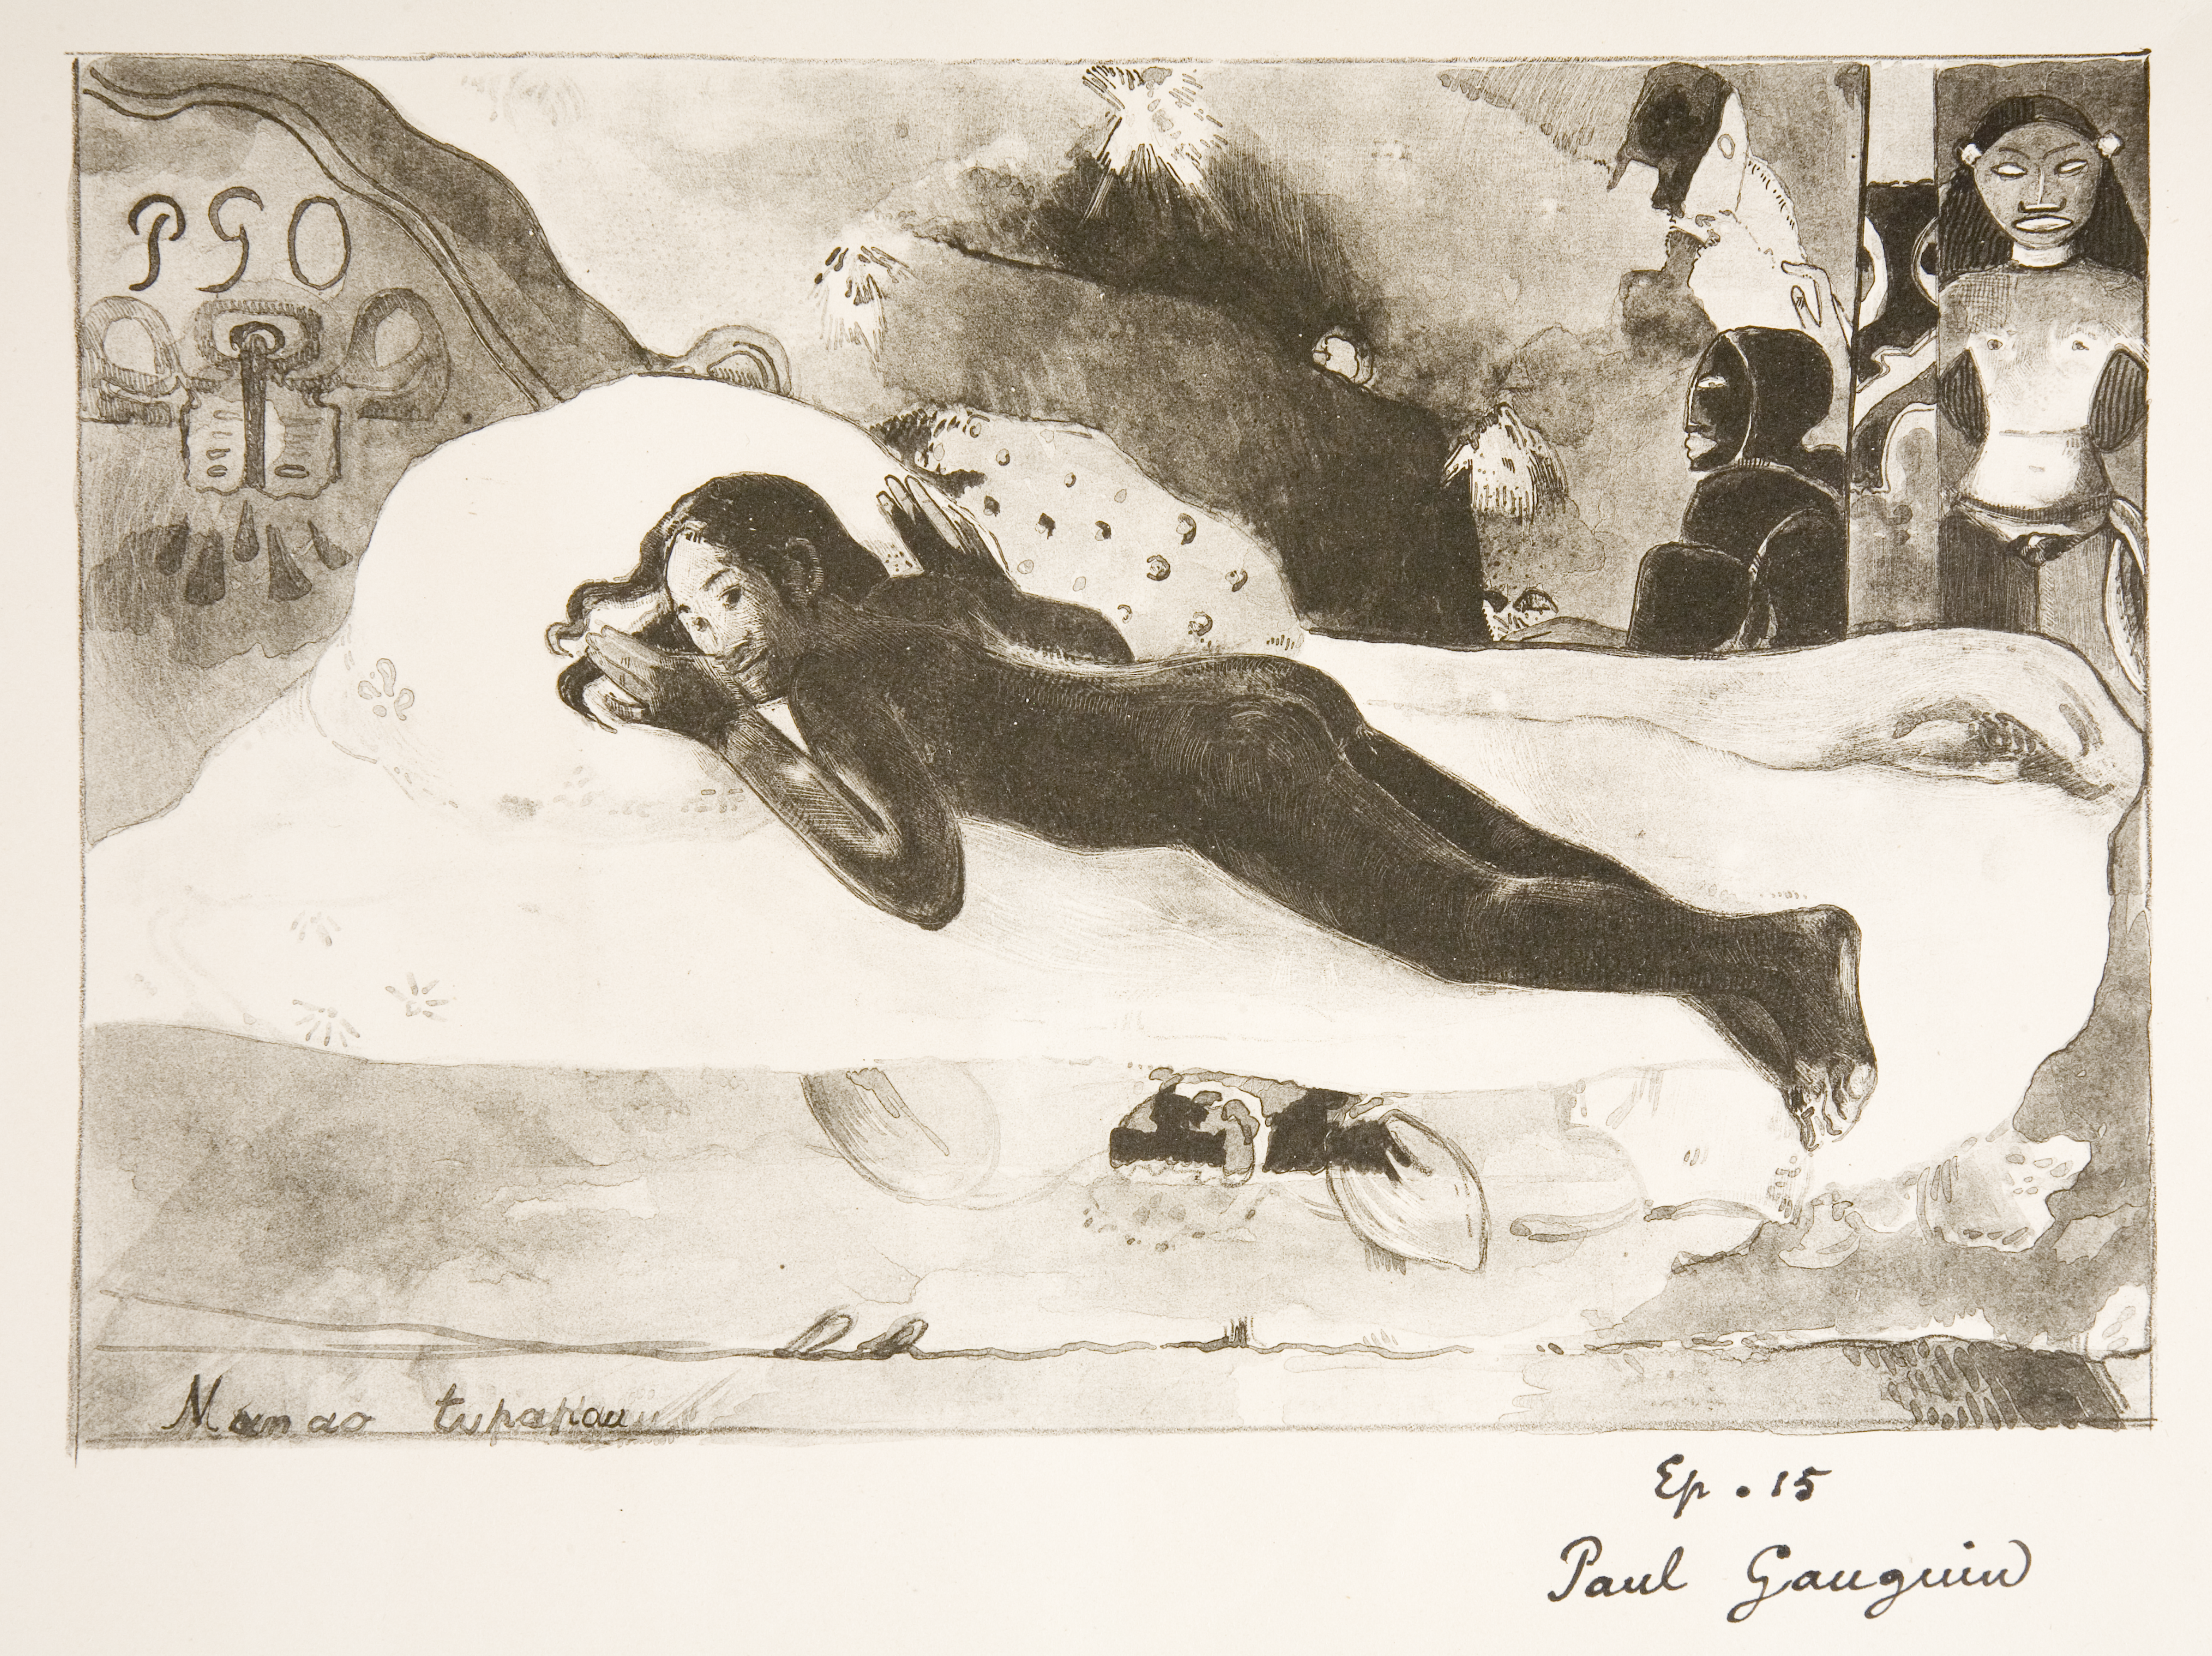 Manao Tupapau (Ruhları Düşünüyor - Ölülerin Ruhu İzliyor) by Paul Gauguin - 1894 - - 